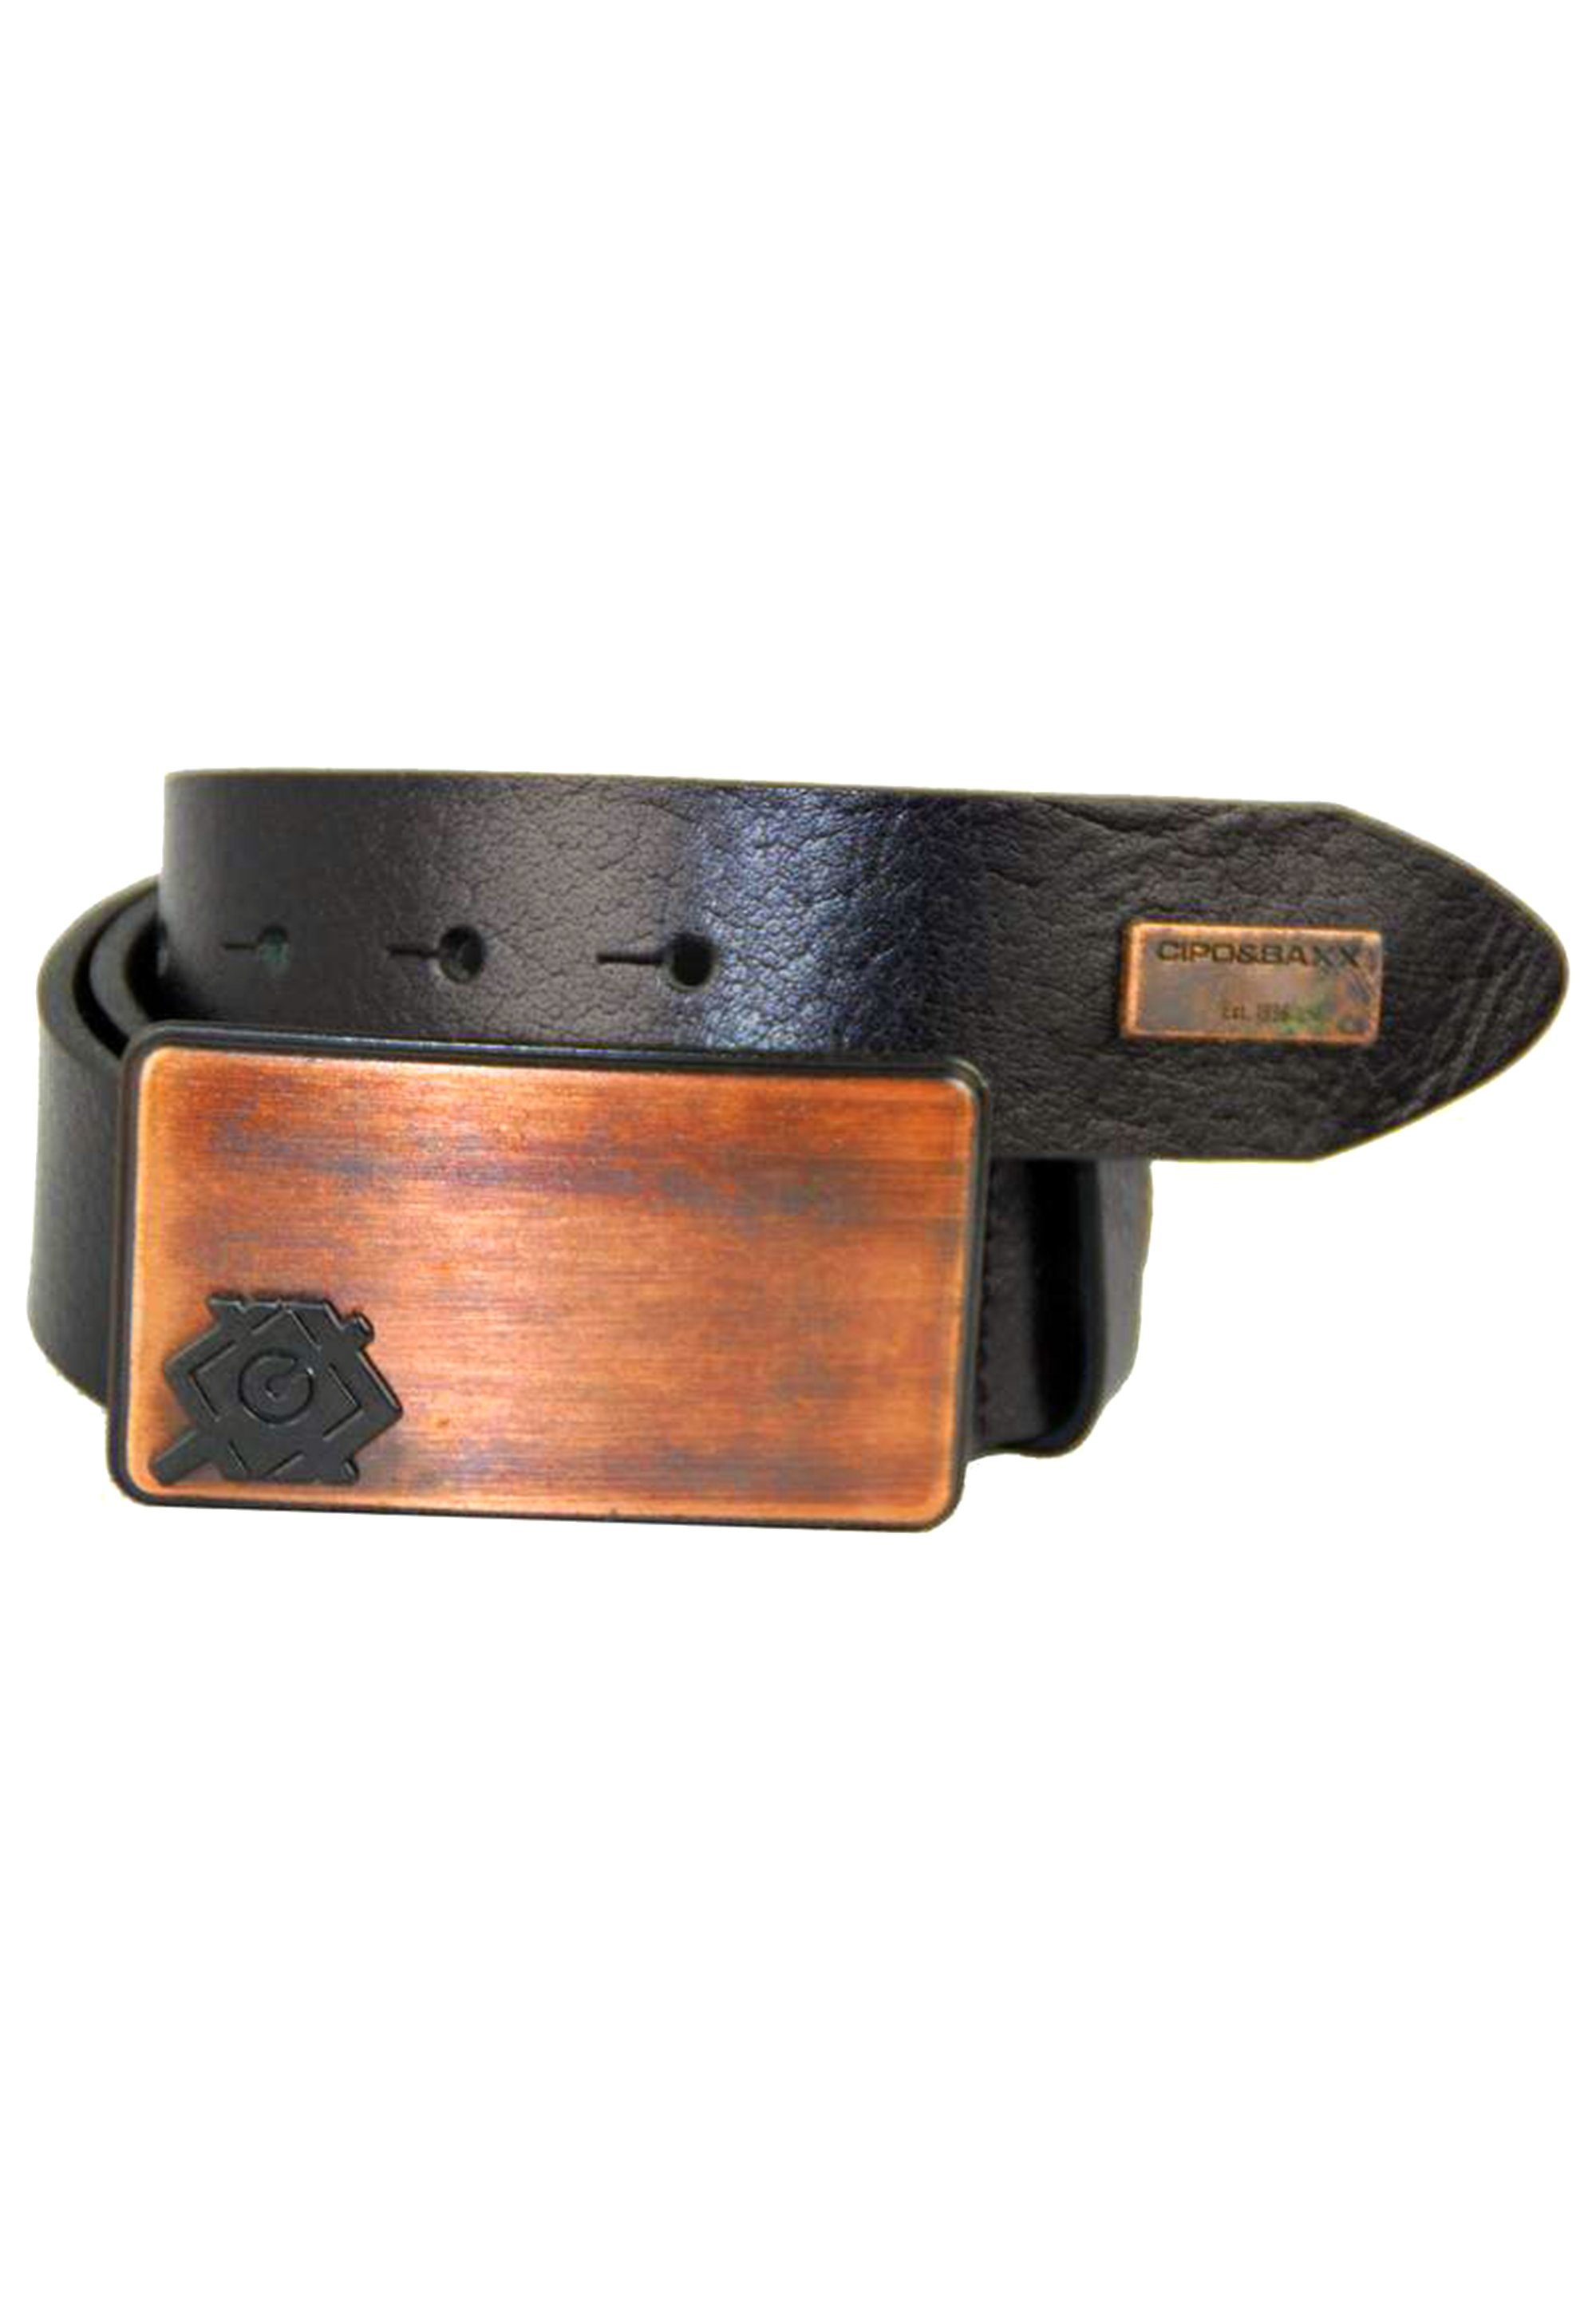 schwarz & Metallschnalle stylischer Cipo Ledergürtel mit Baxx